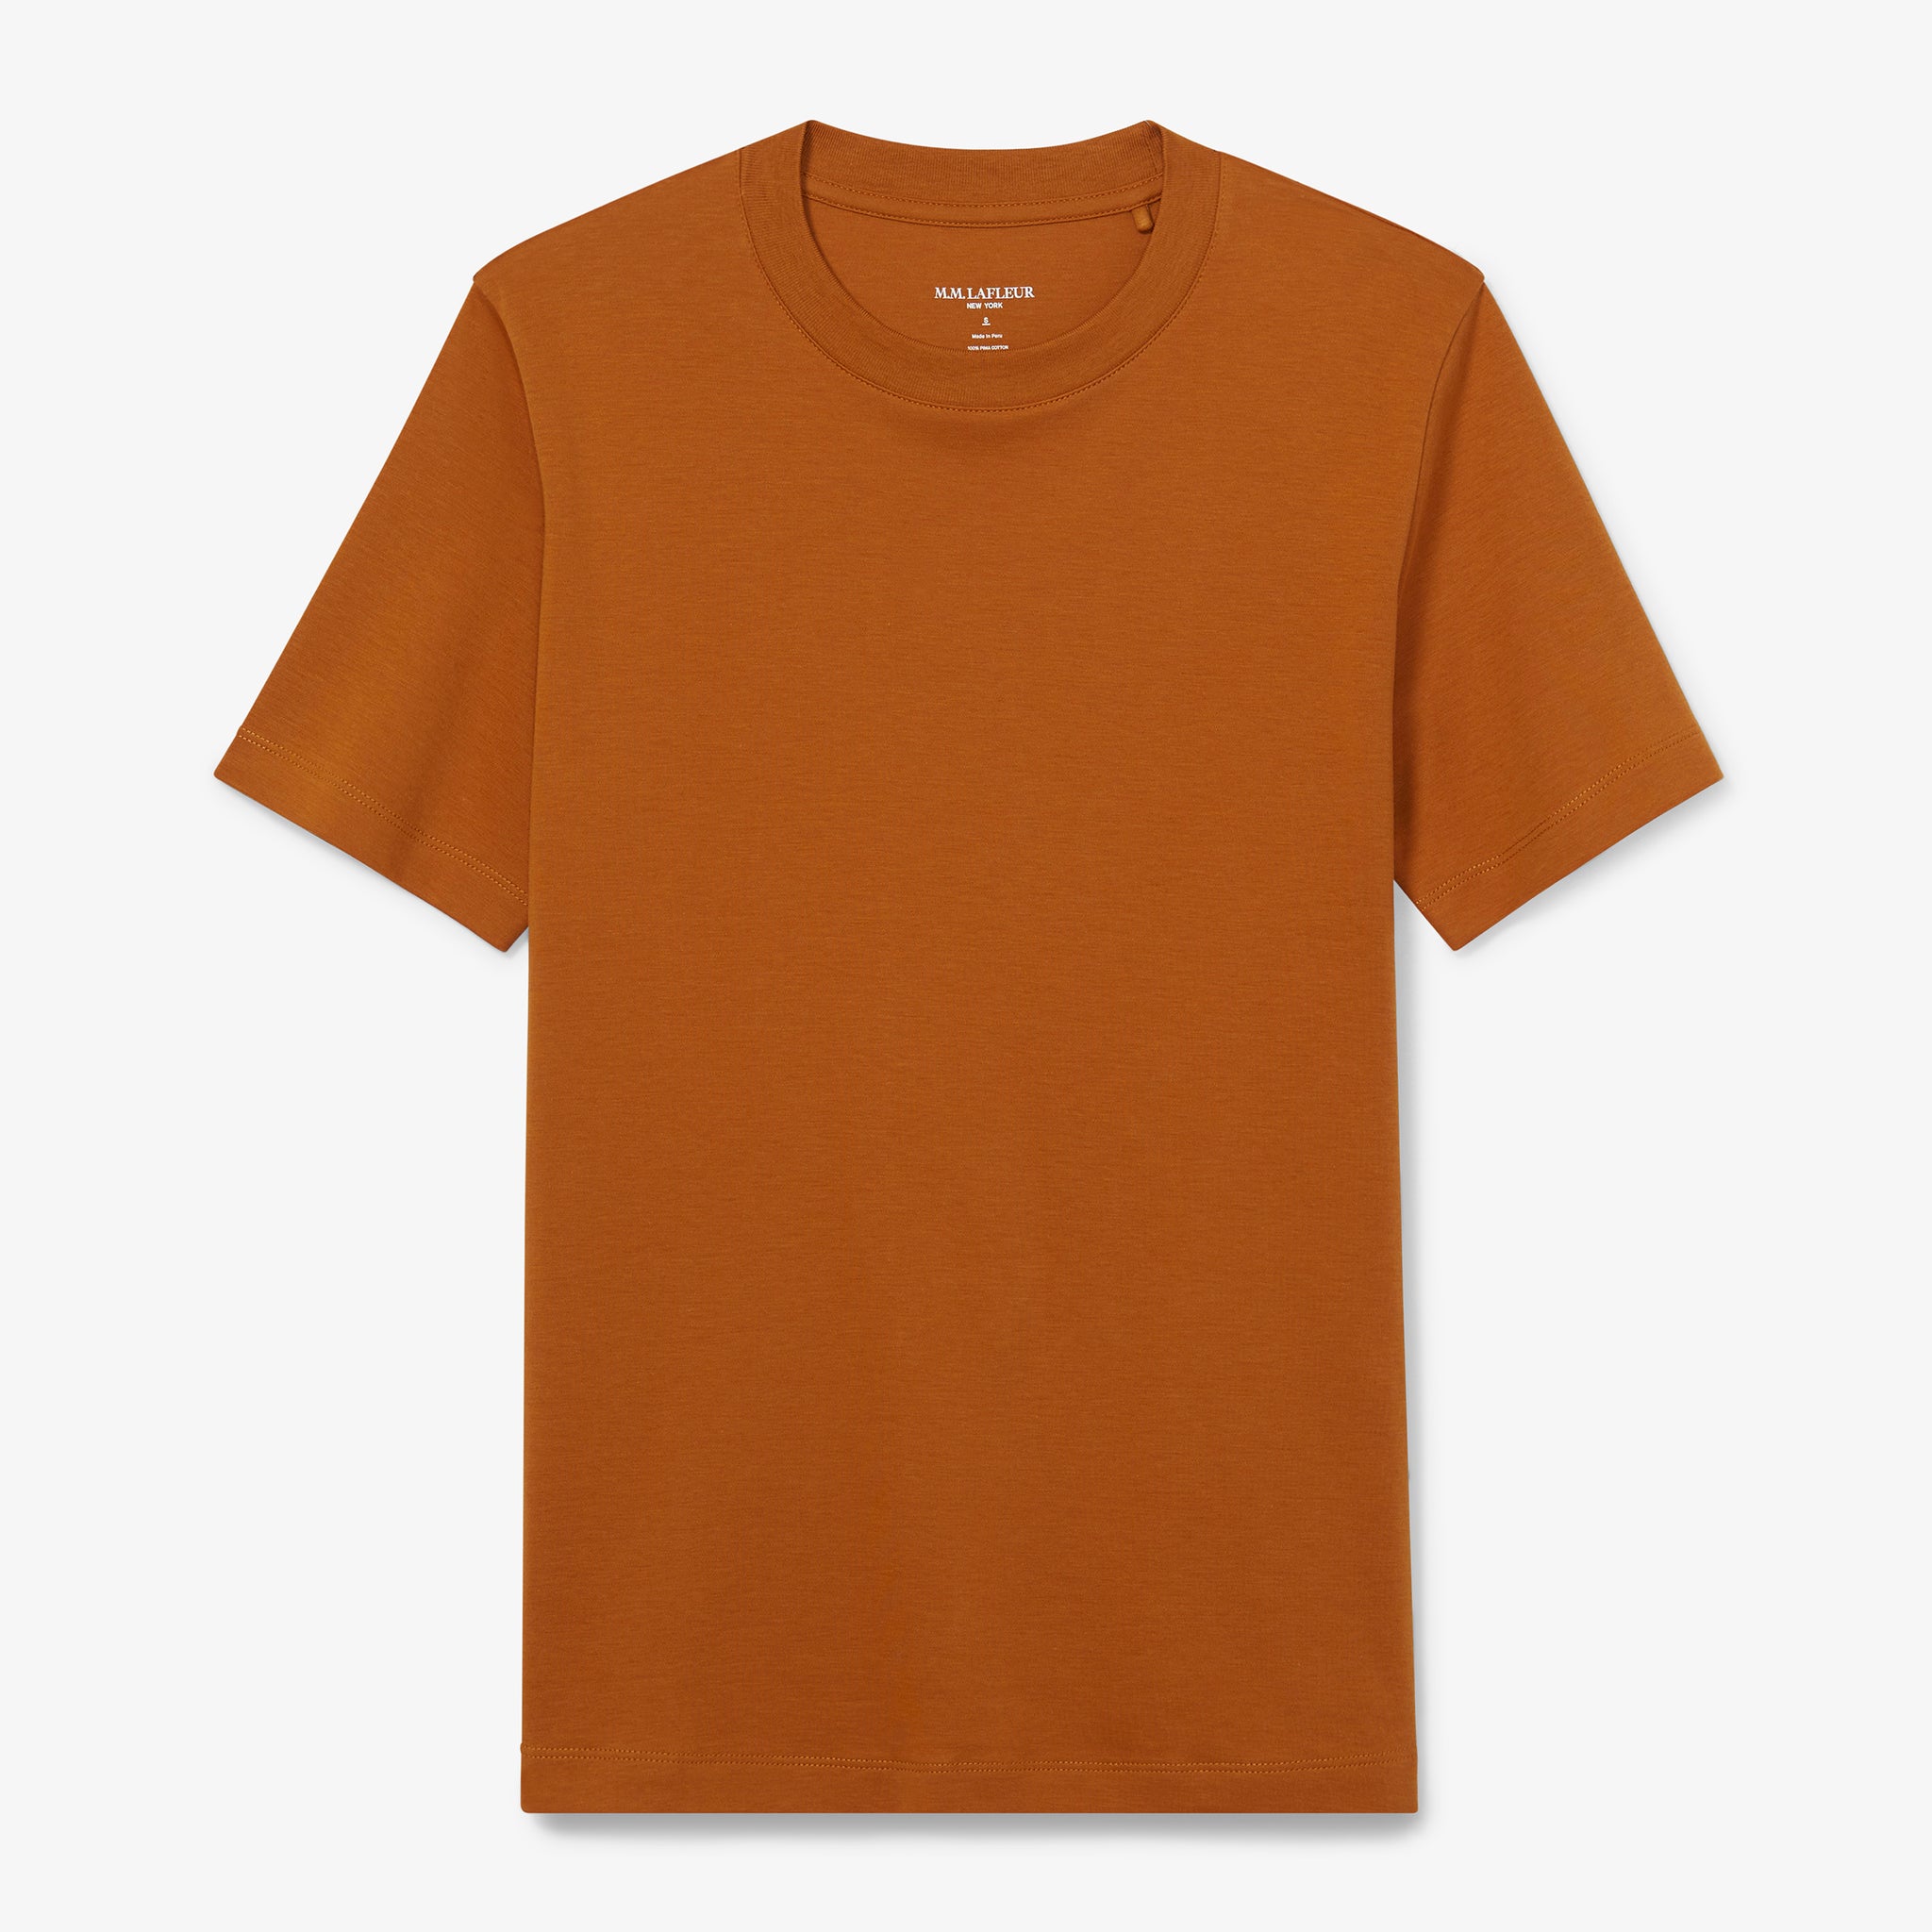 Packshot image of the Leslie T-Shirt - Pima Cotton in Burnt Orange